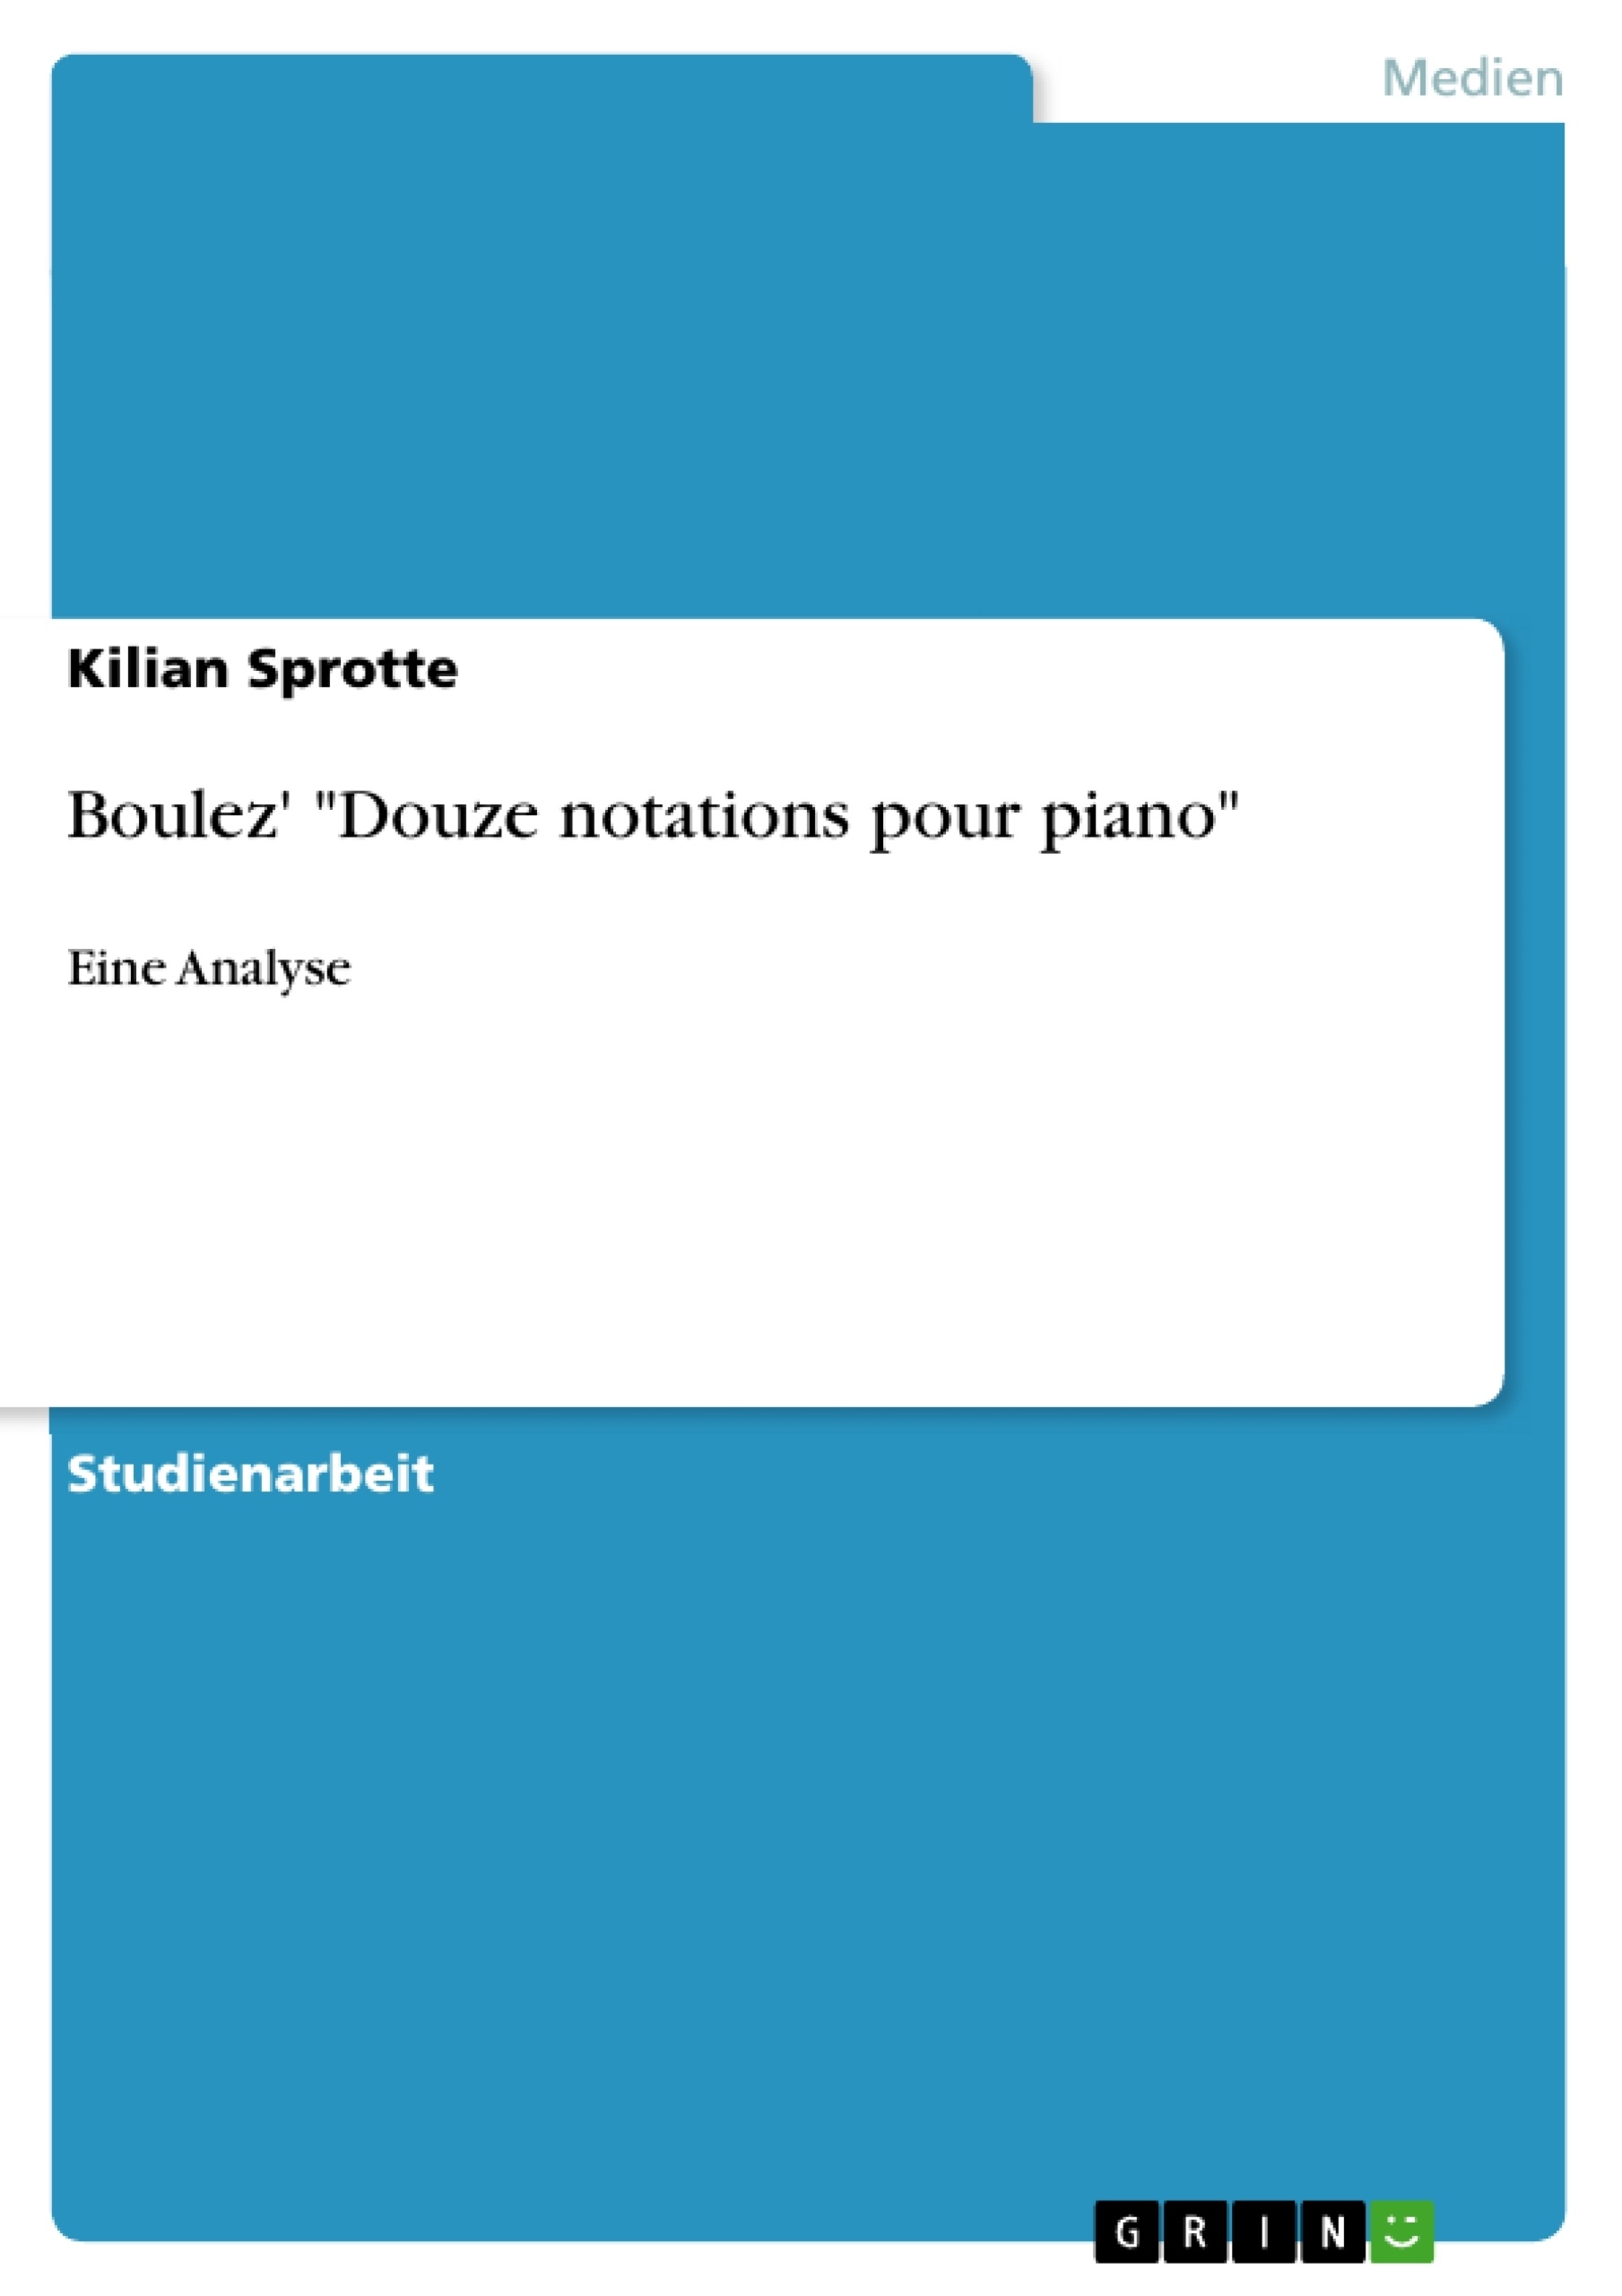 Título: Boulez' "Douze notations pour piano"